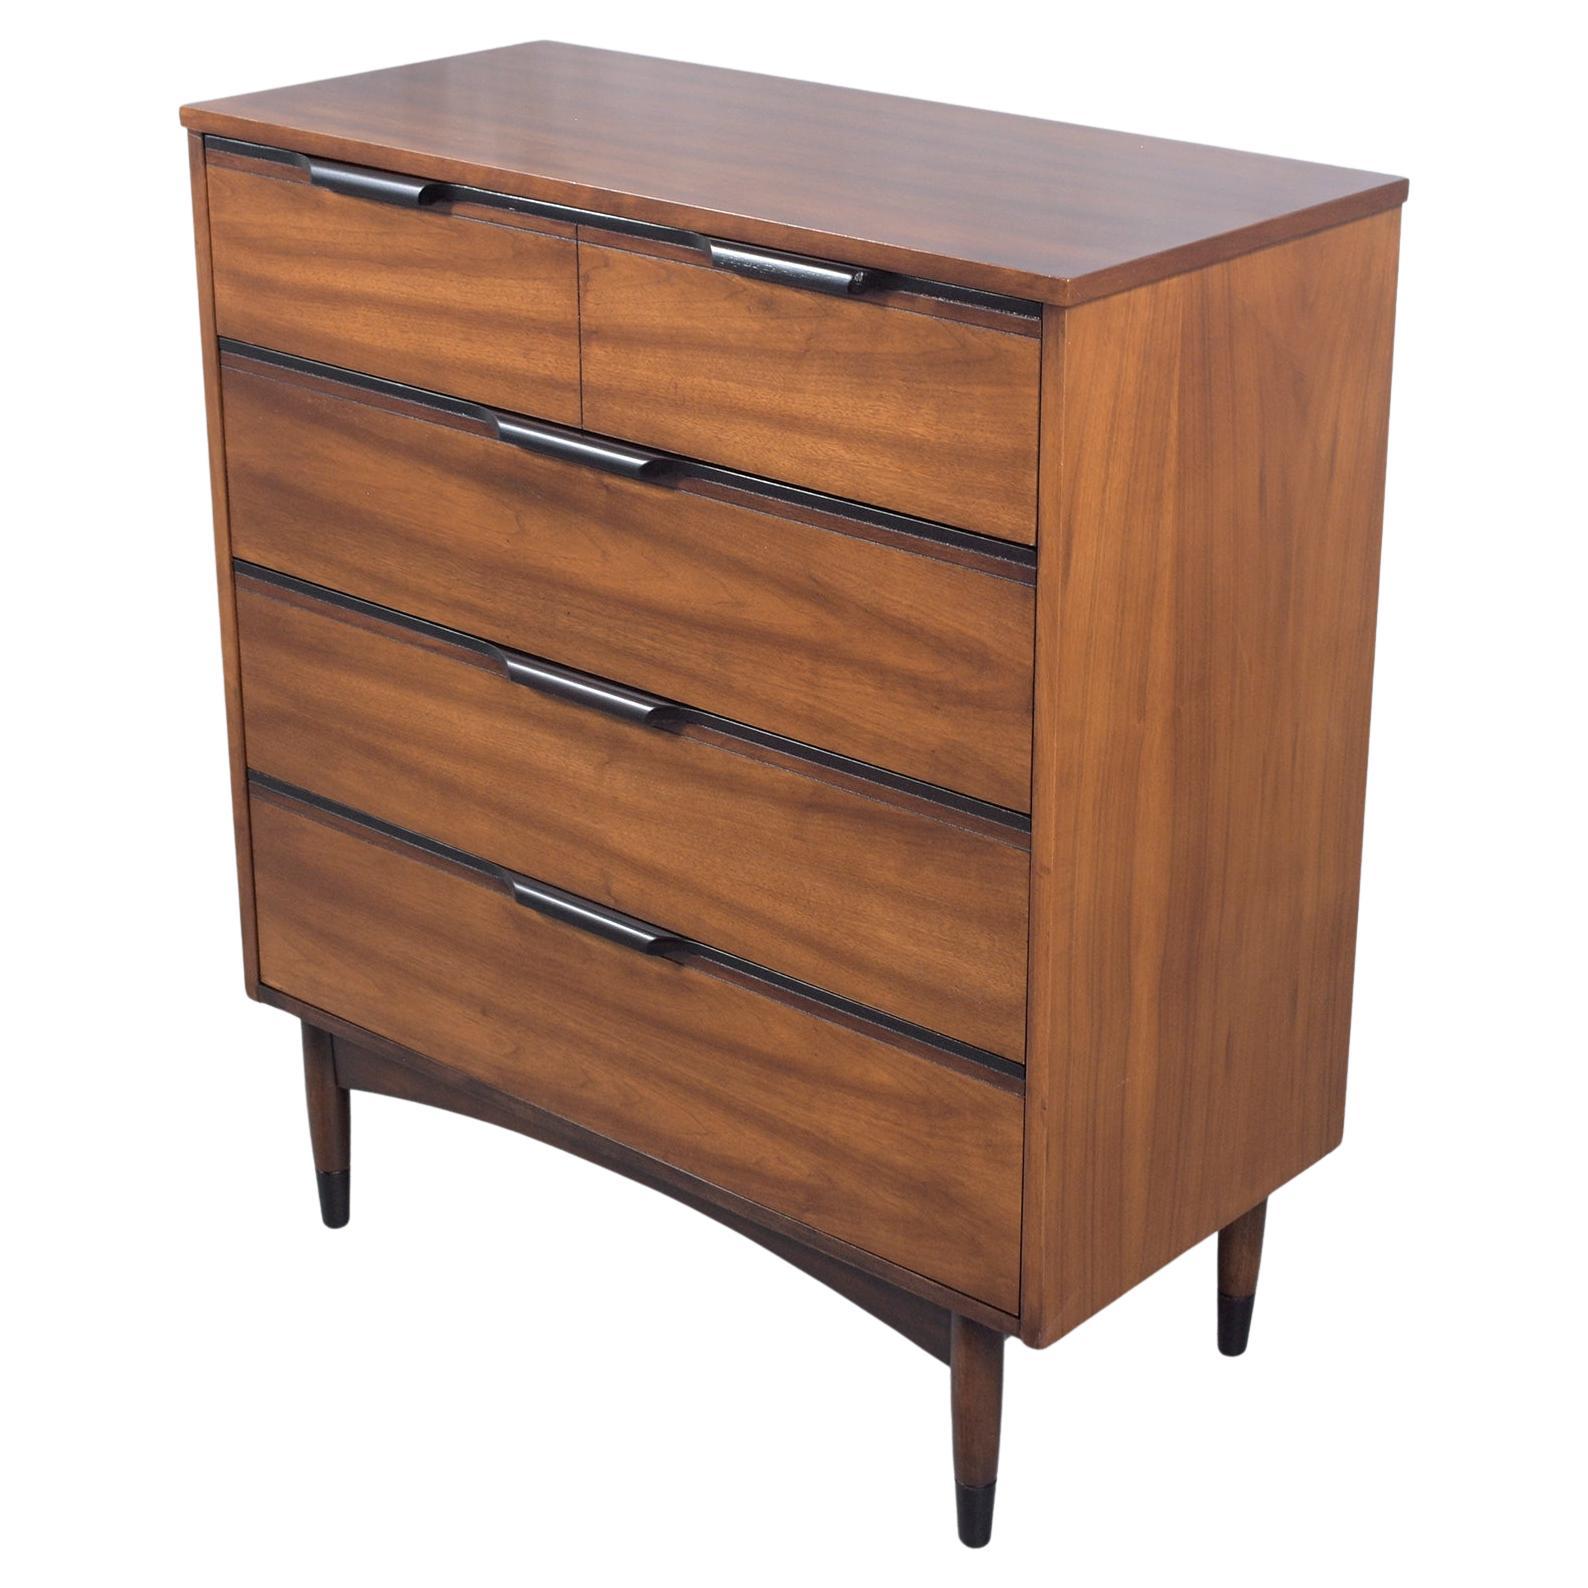 Modern Walnut Dresser Restored: Two-Tone Elegance & Craftsmanship For Sale